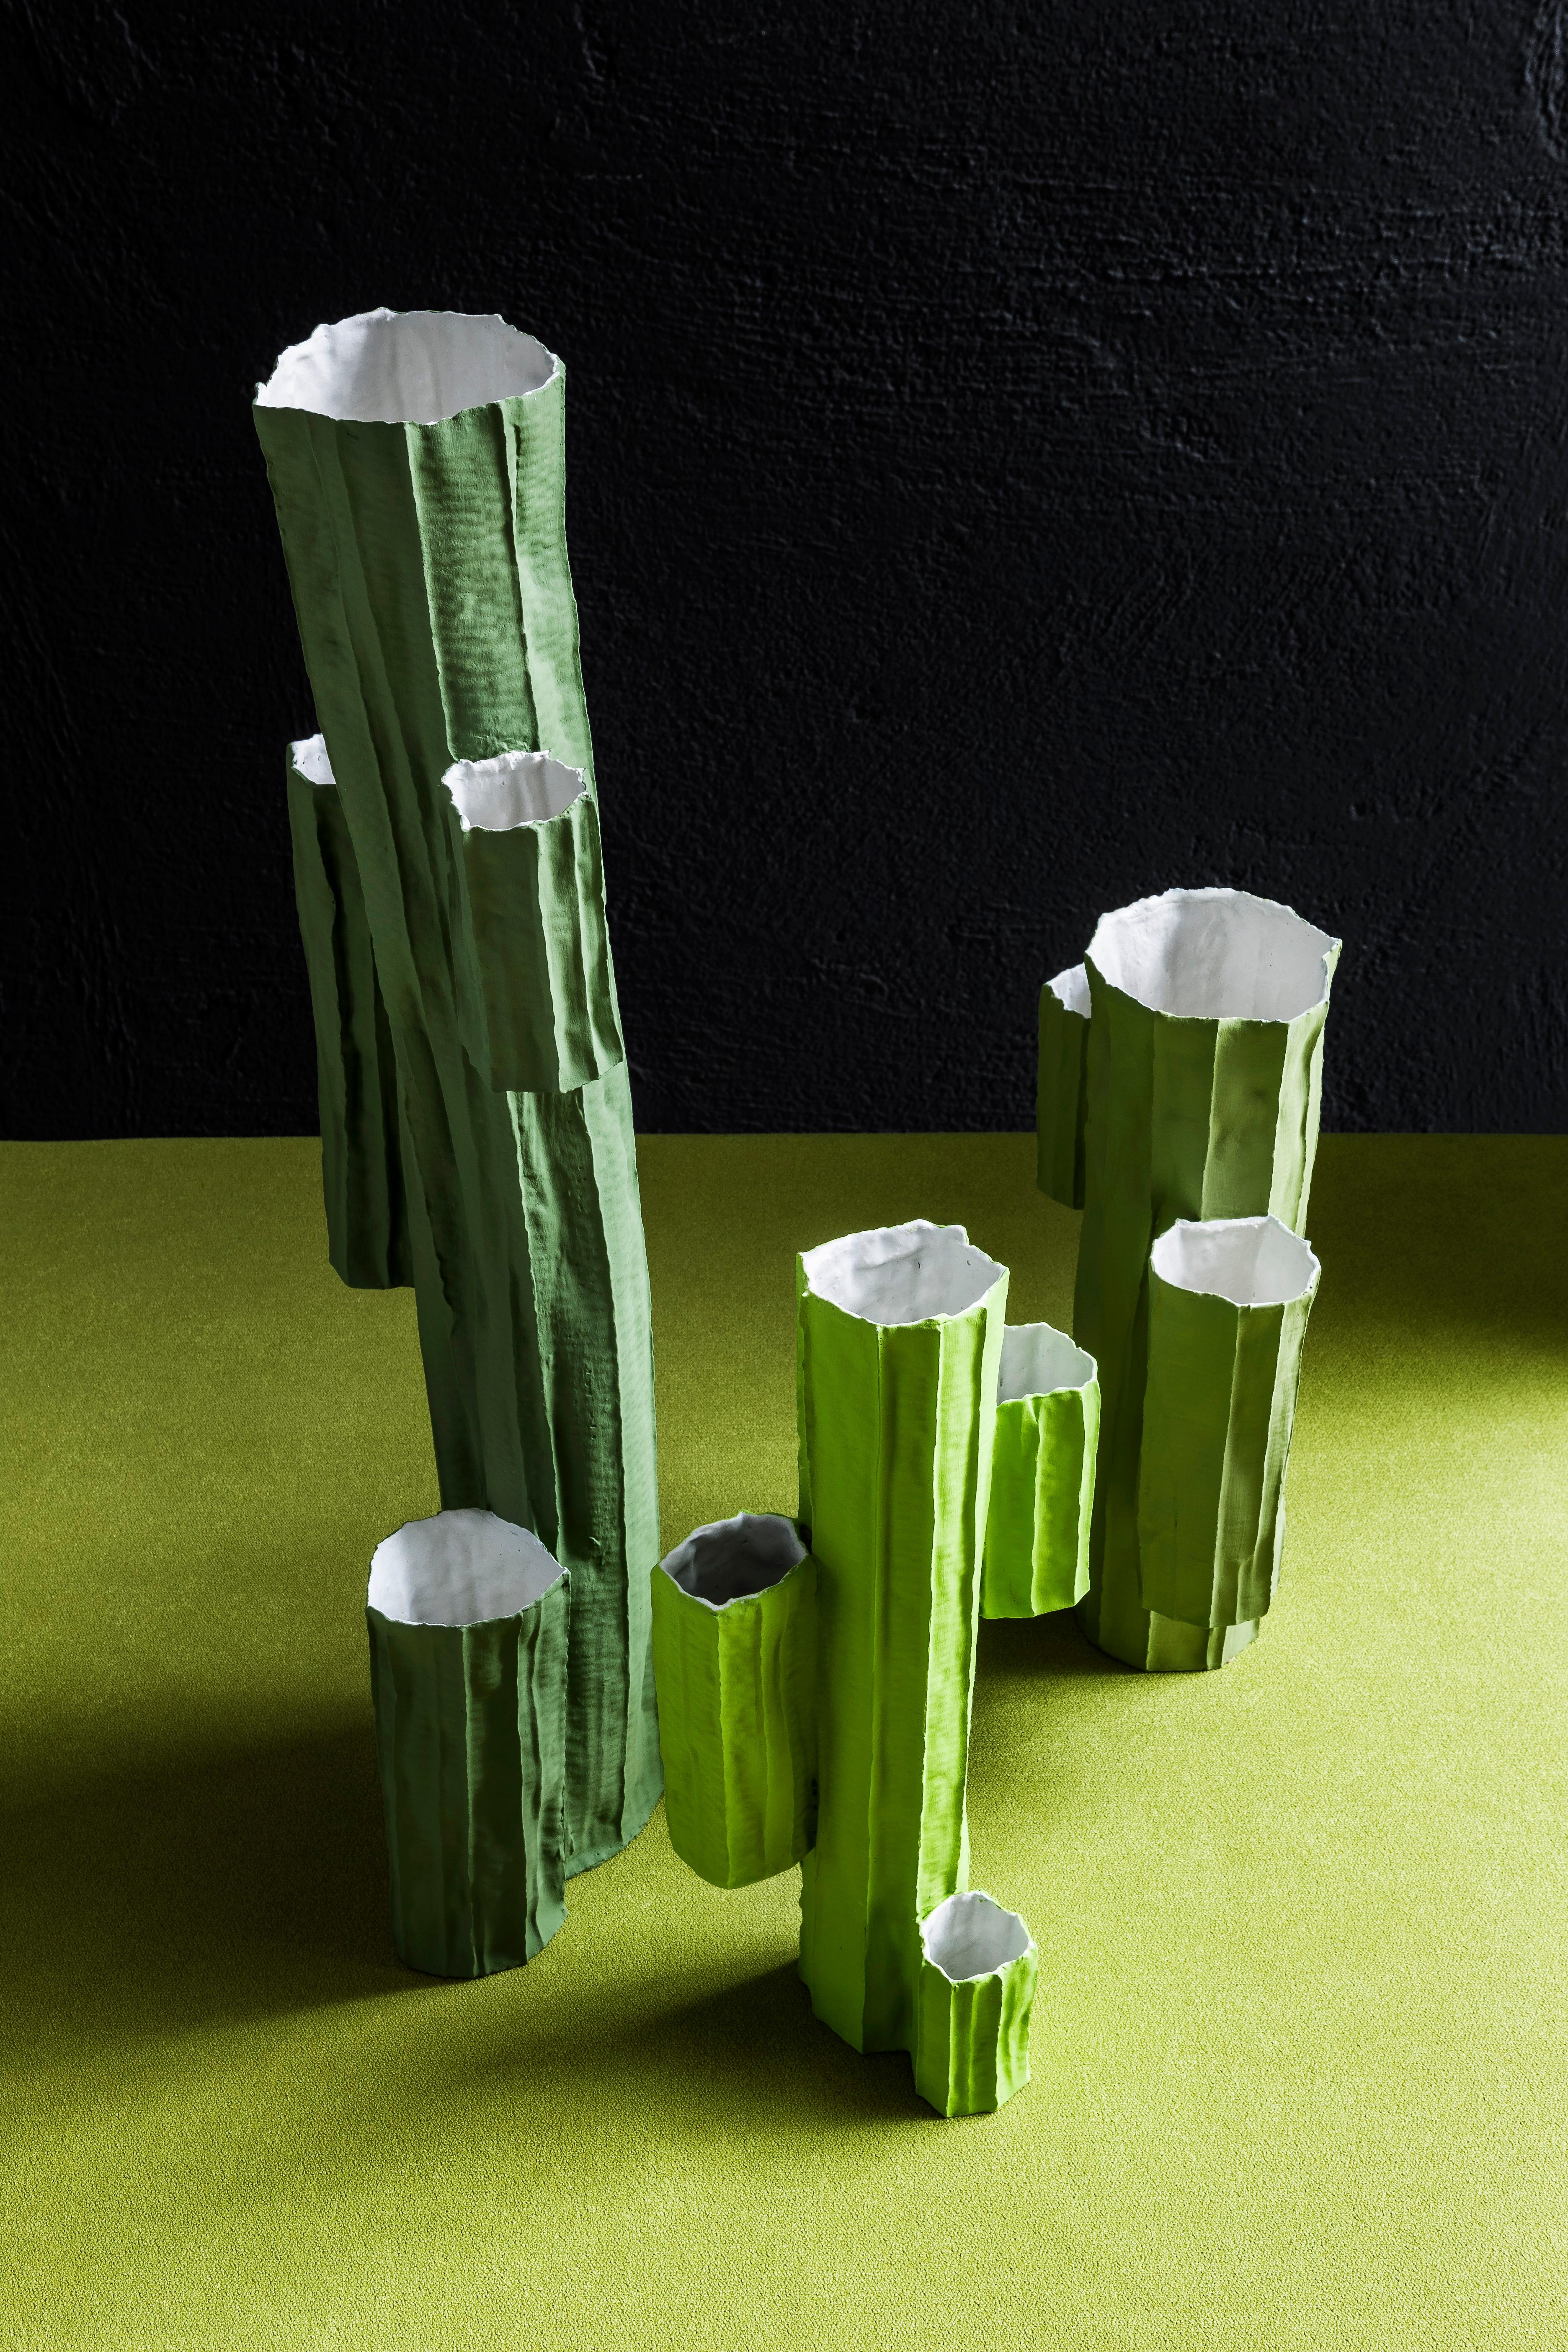 Italian Contemporary Ceramic Cactus Vase #3 Colored For Sale